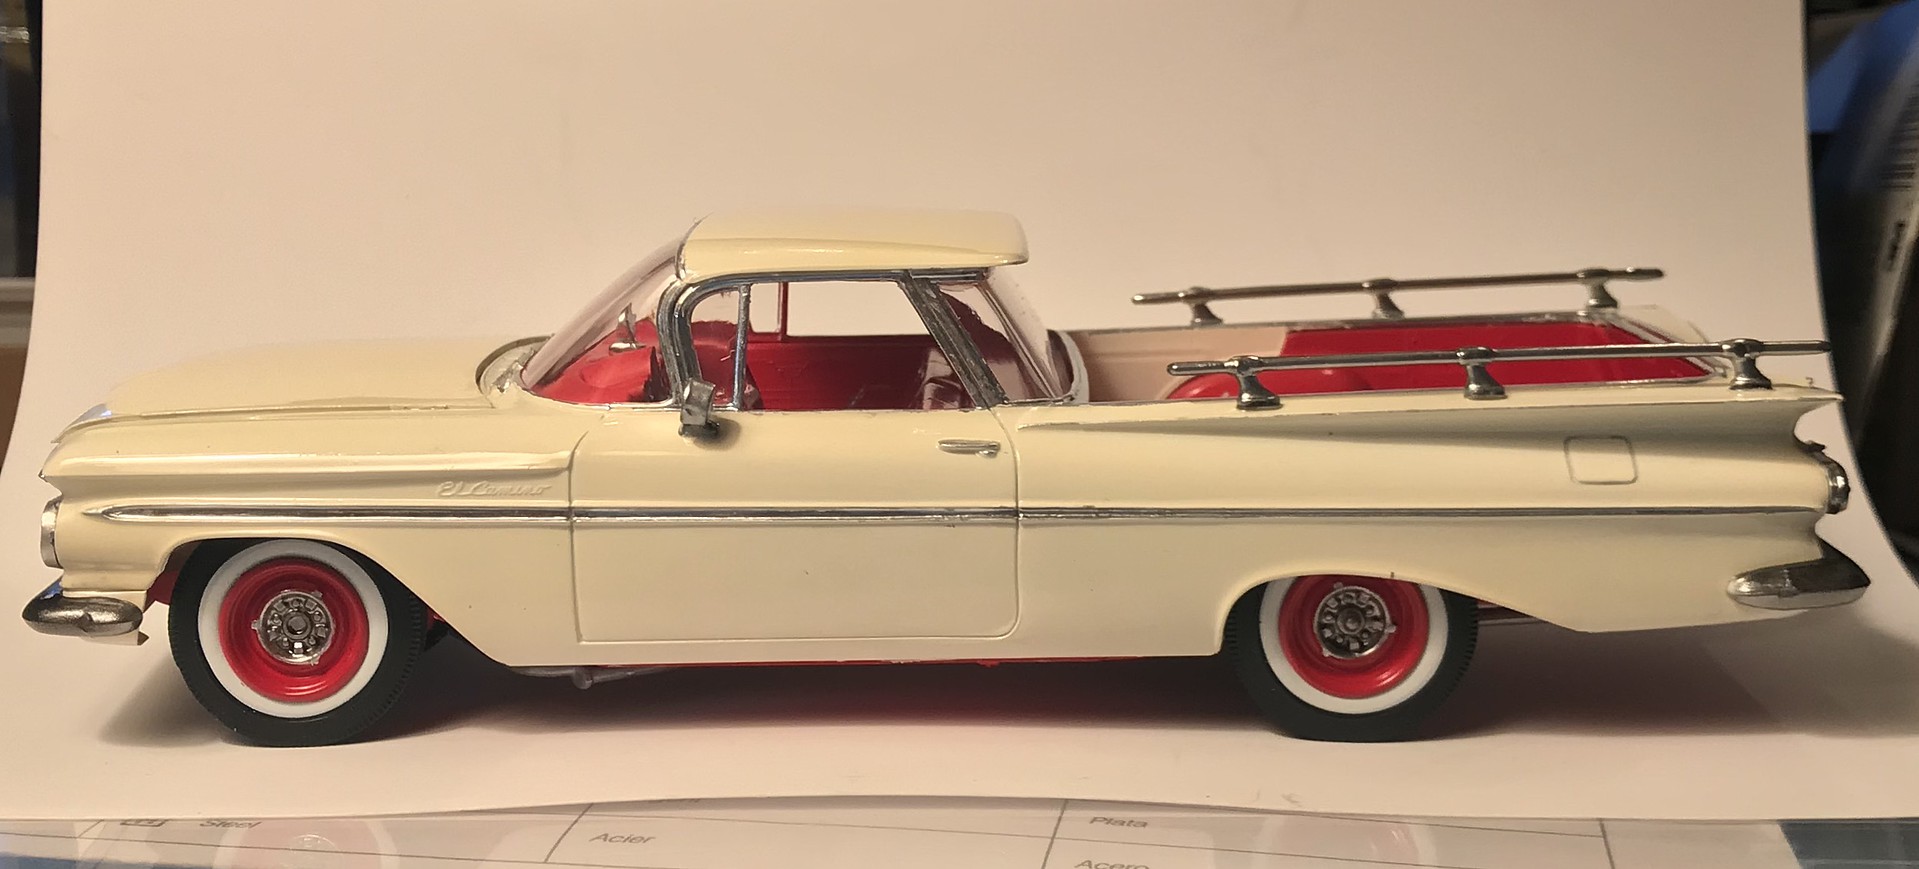 1959 el camino models yellow